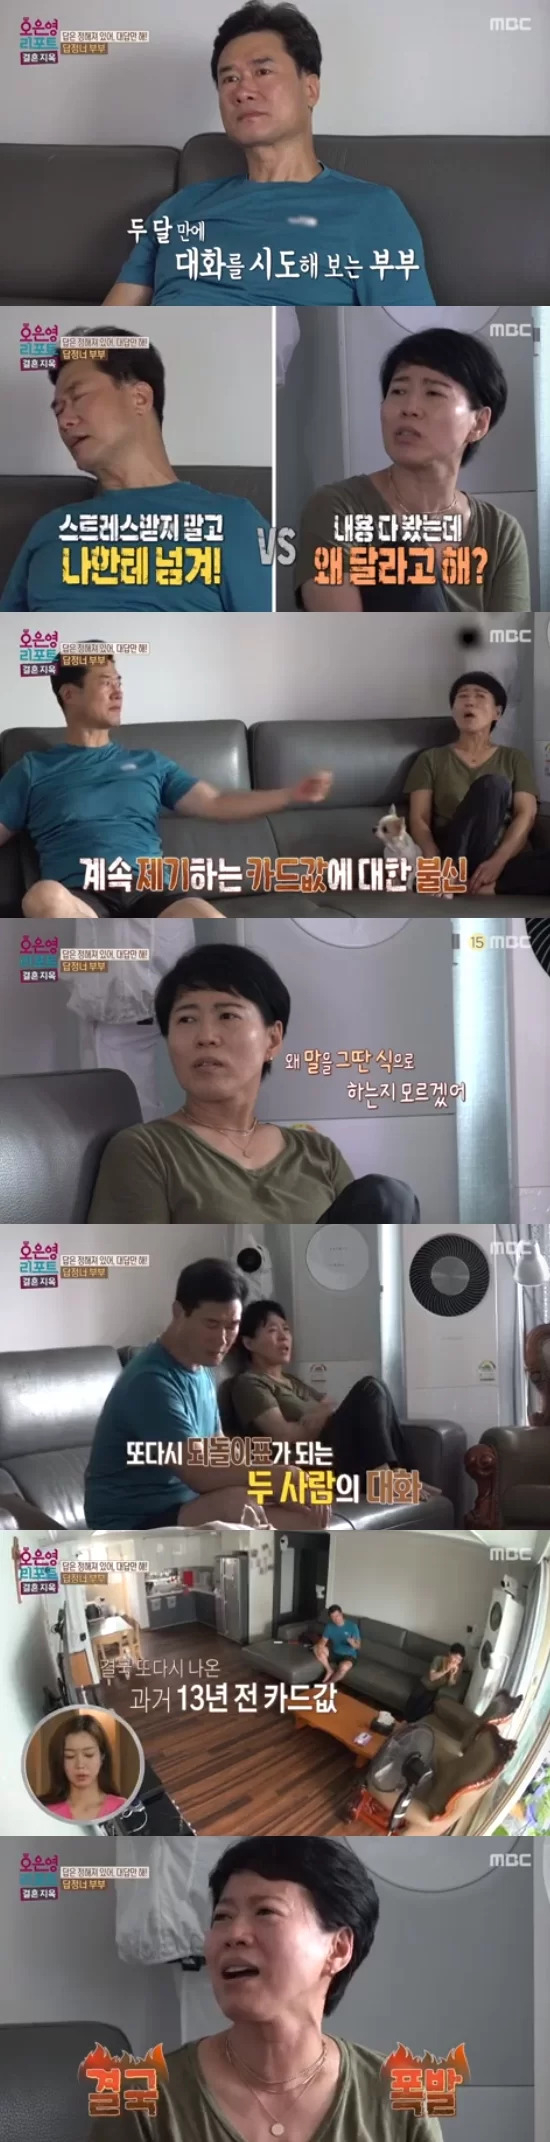 MBC ‘오은영 리포트-결혼지옥’ 화면 캡처